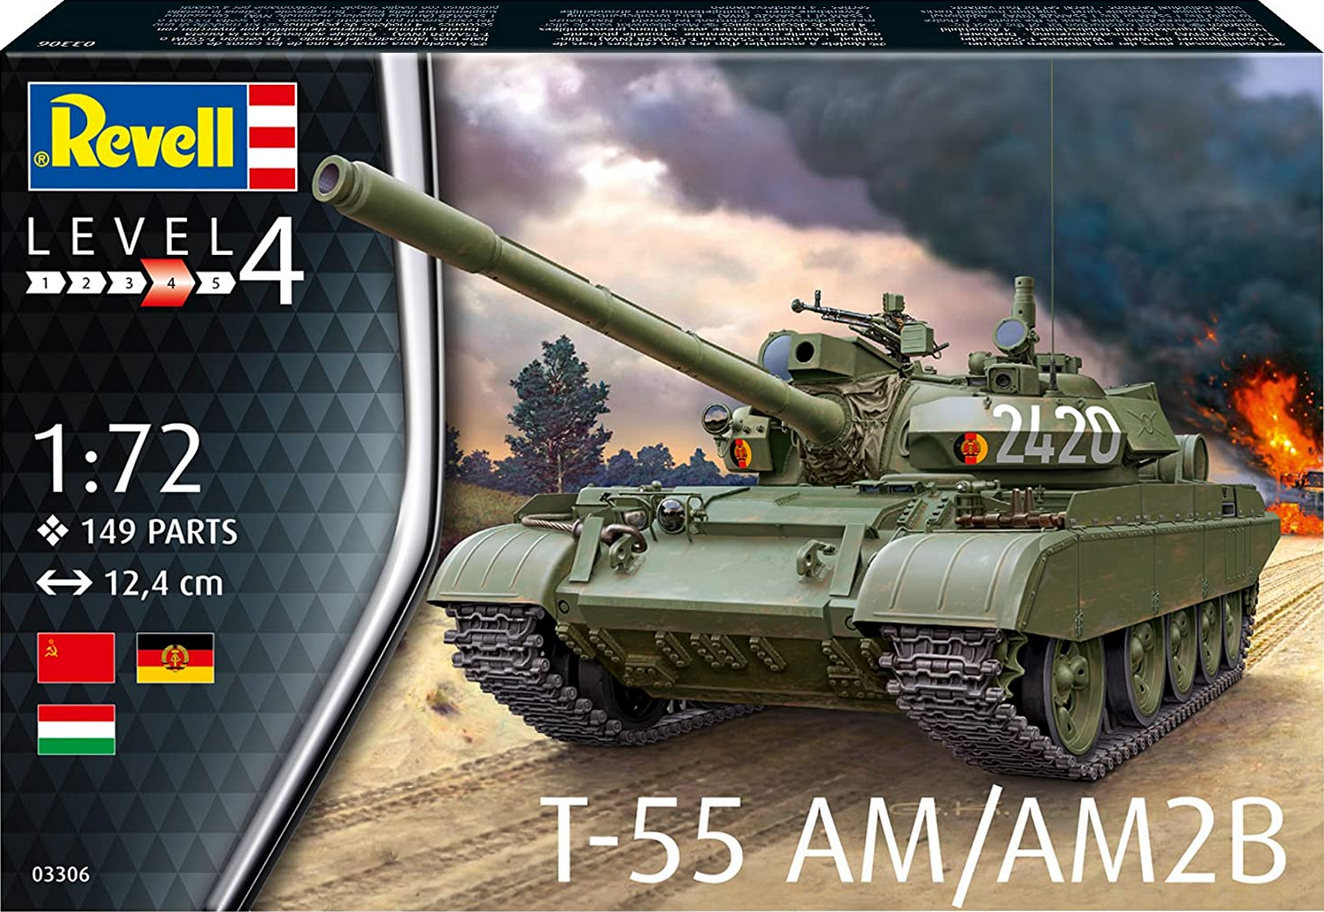 T-55 AM/AM2B - REVELL 1/72